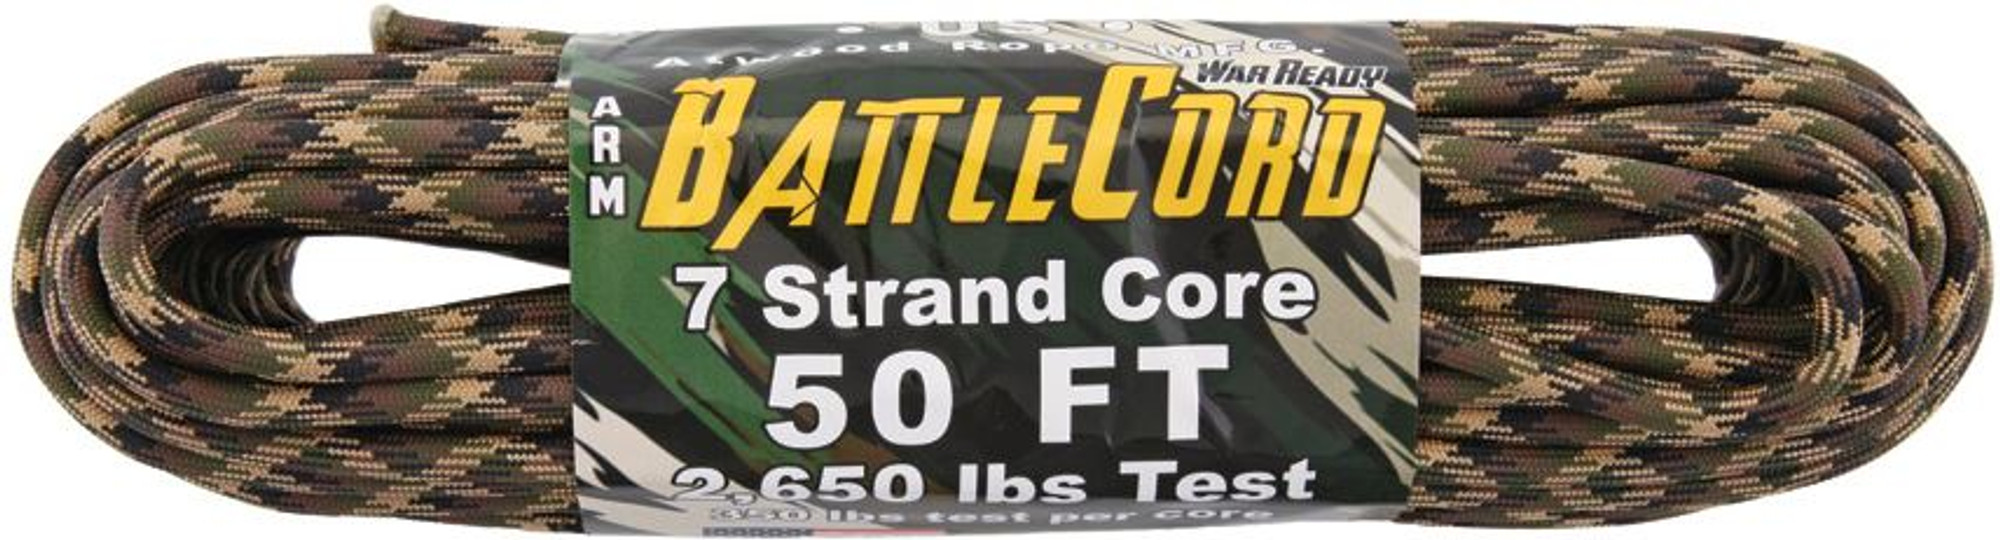 ARM BattleCord 2650 lb, 50 Ft. - Ground War